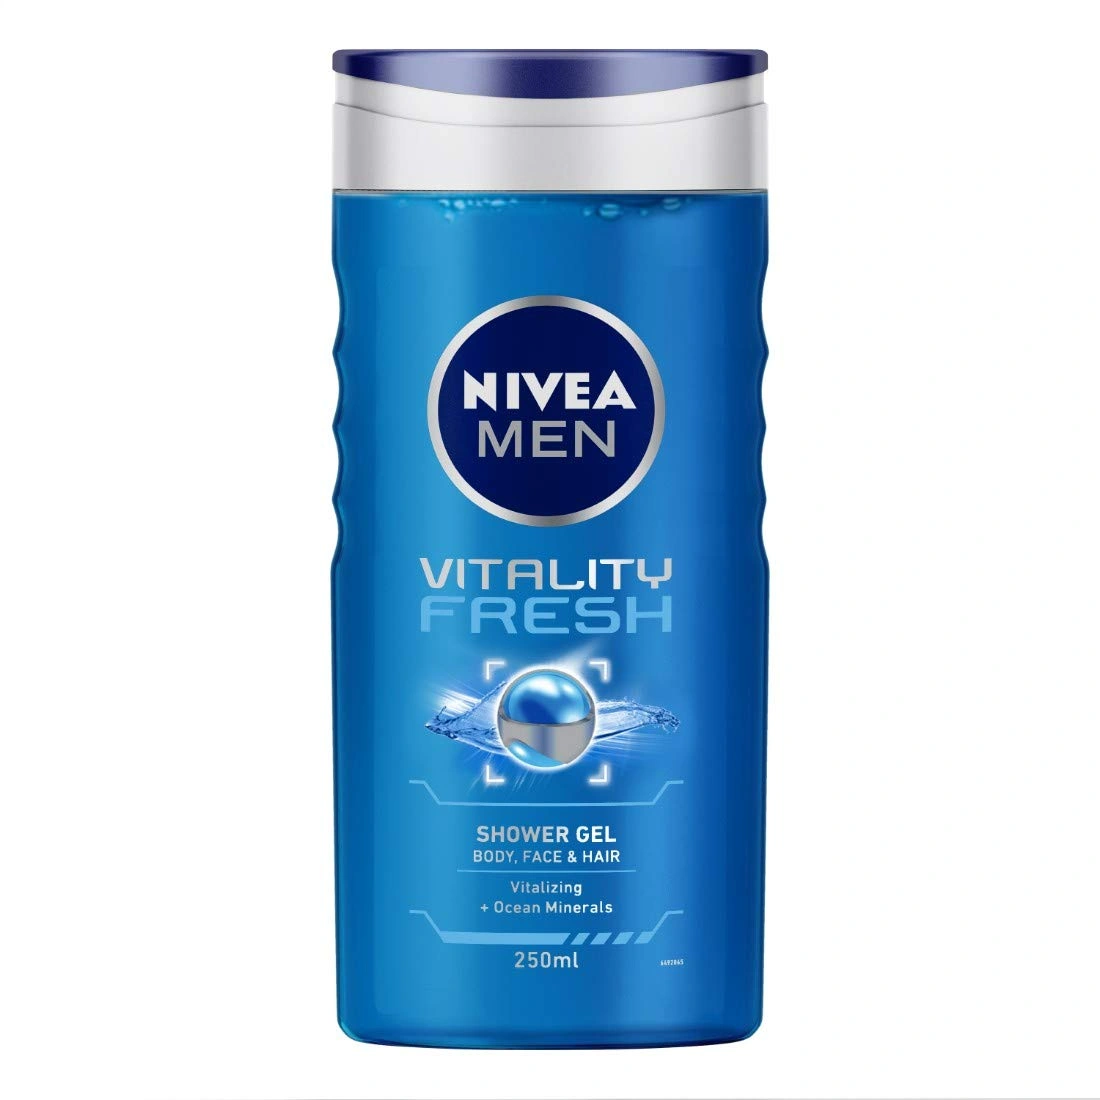 Nivea Men Shower Gel - Vitality Fresh Body Wash 250ml Bottle-BM1527